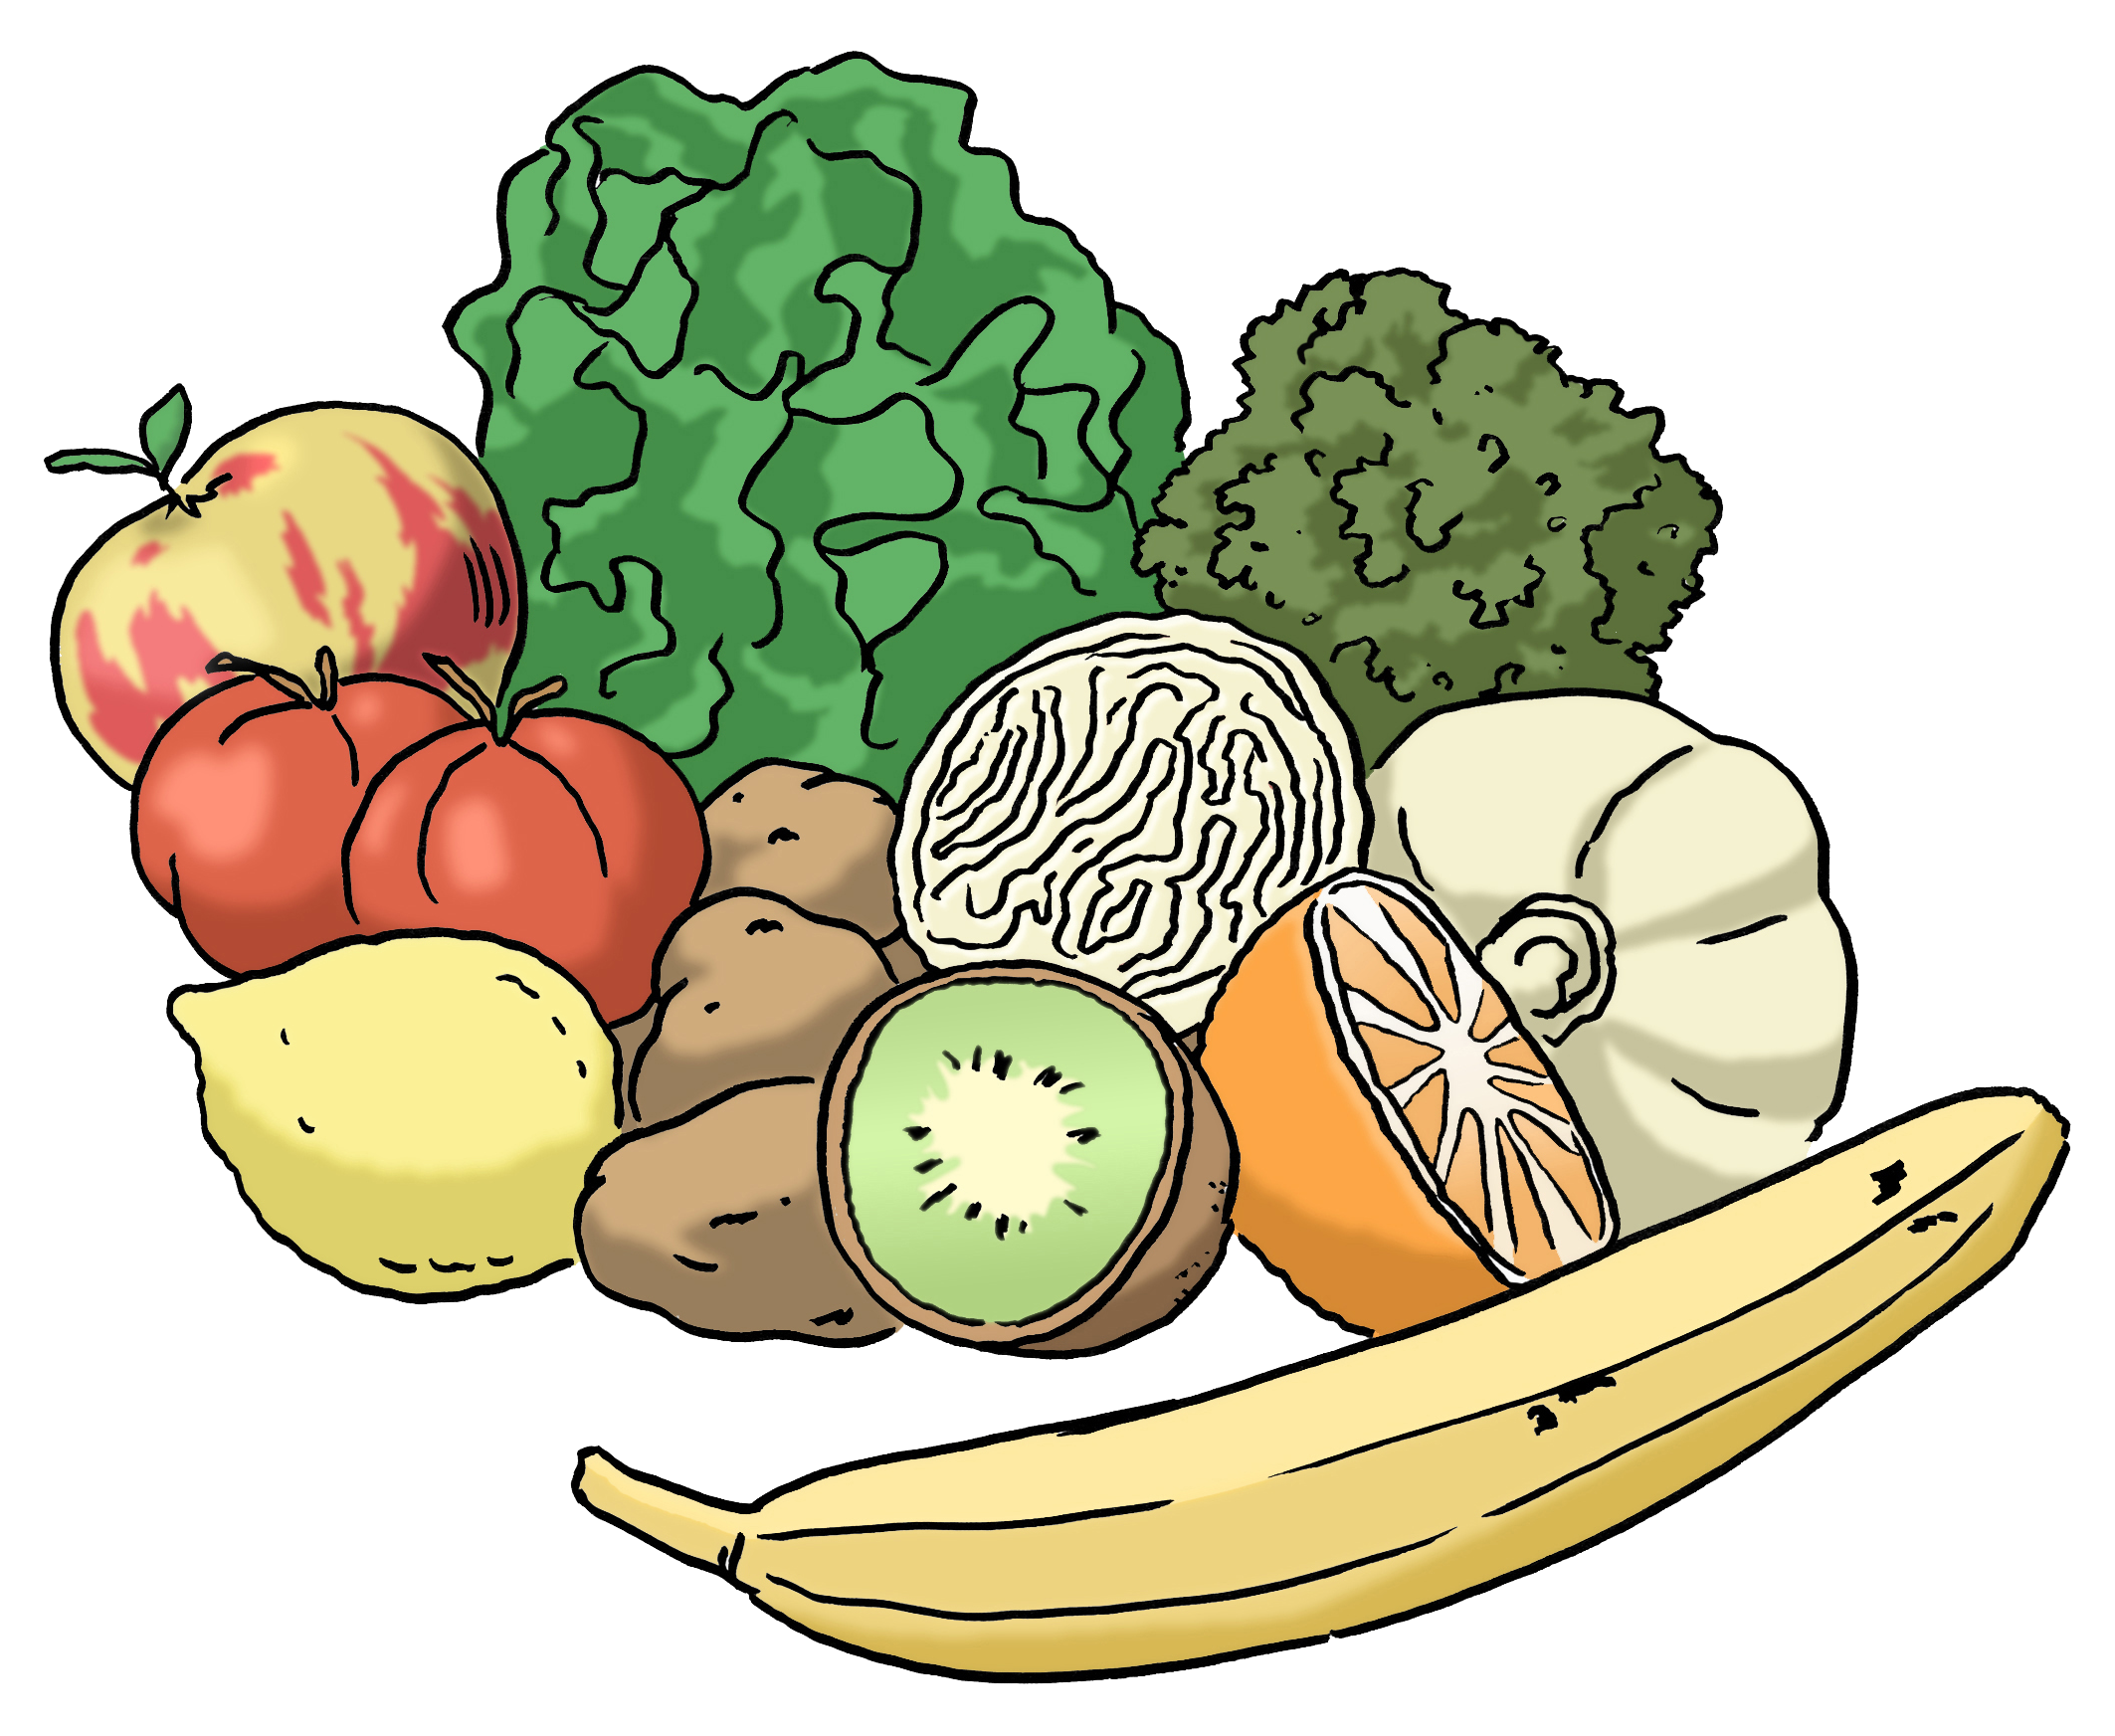 Verschiedenes Obst und Gemüse (Zeichnung)